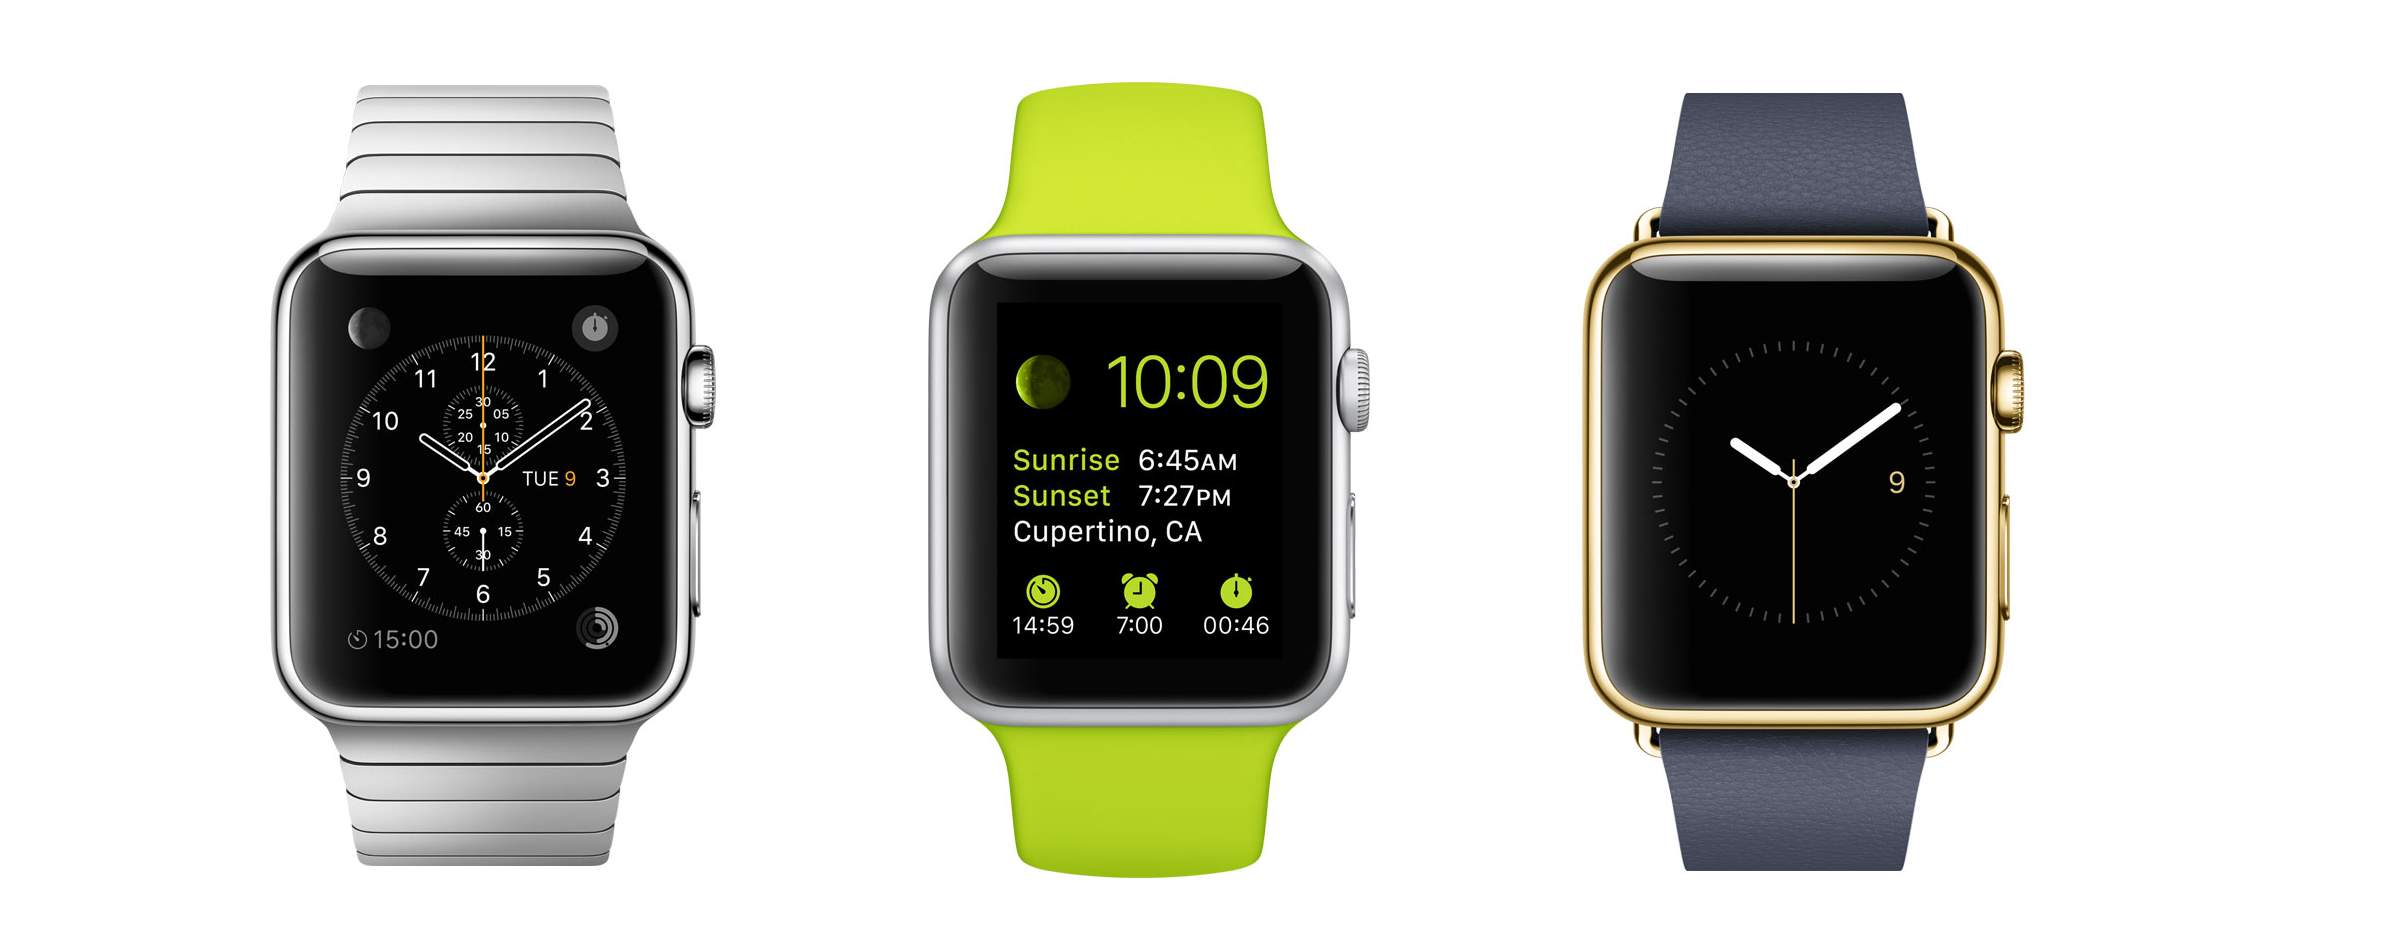 Apple Watch : tous les détails #11